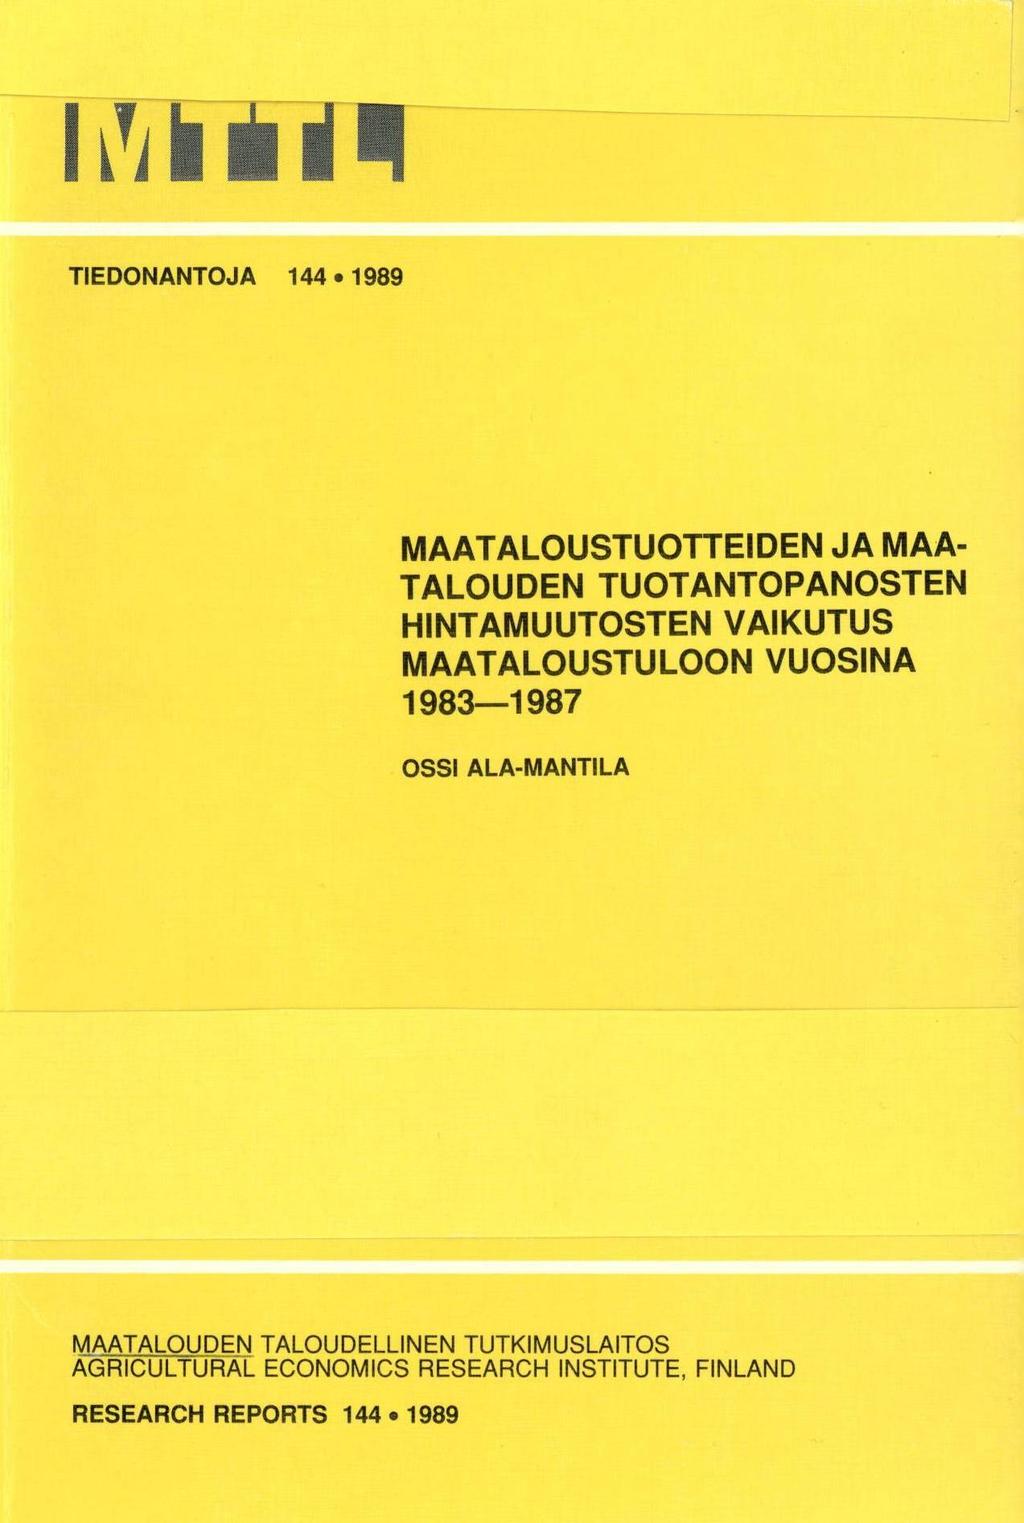 TIEDONANTOJA 144 1989 MAATALOUSTUOTTEIDEN JA MAA- TALOUDEN TUOTANTOPANOSTEN HINTAMUUTOSTEN VAIKUTUS MAATALOUSTULOON VUOSINA 1983-1987